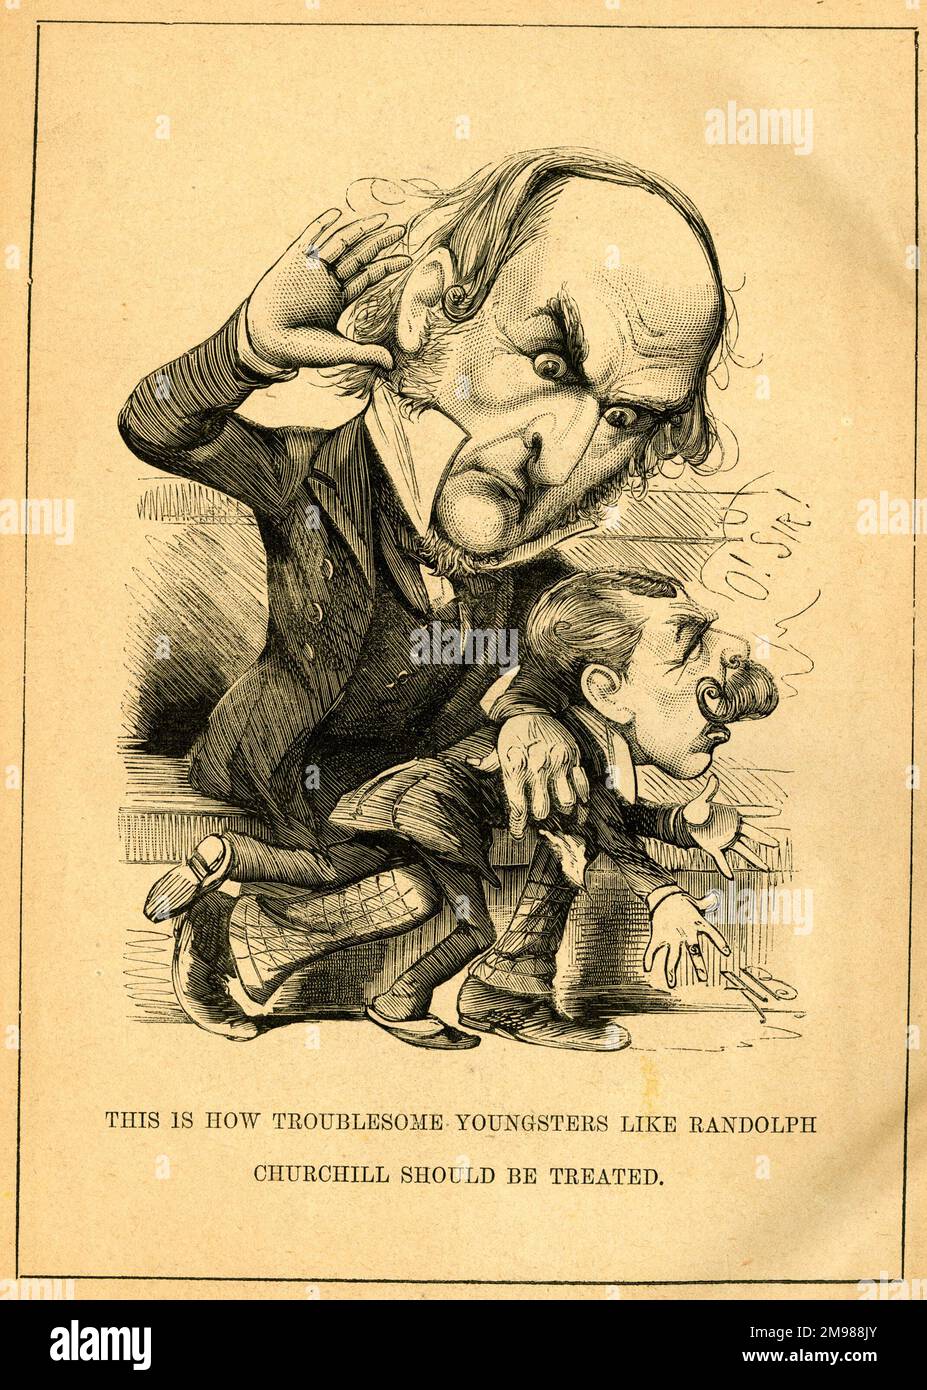 Zeichentrickfilm William Gladstone (1809-1898), liberaler Ministerpräsident, bestraft seinen jüngeren politischen Kollegen, Lord Randolph Henry Spencer Churchill (1849-1895), weil er Ärger verursacht hat. Stockfoto